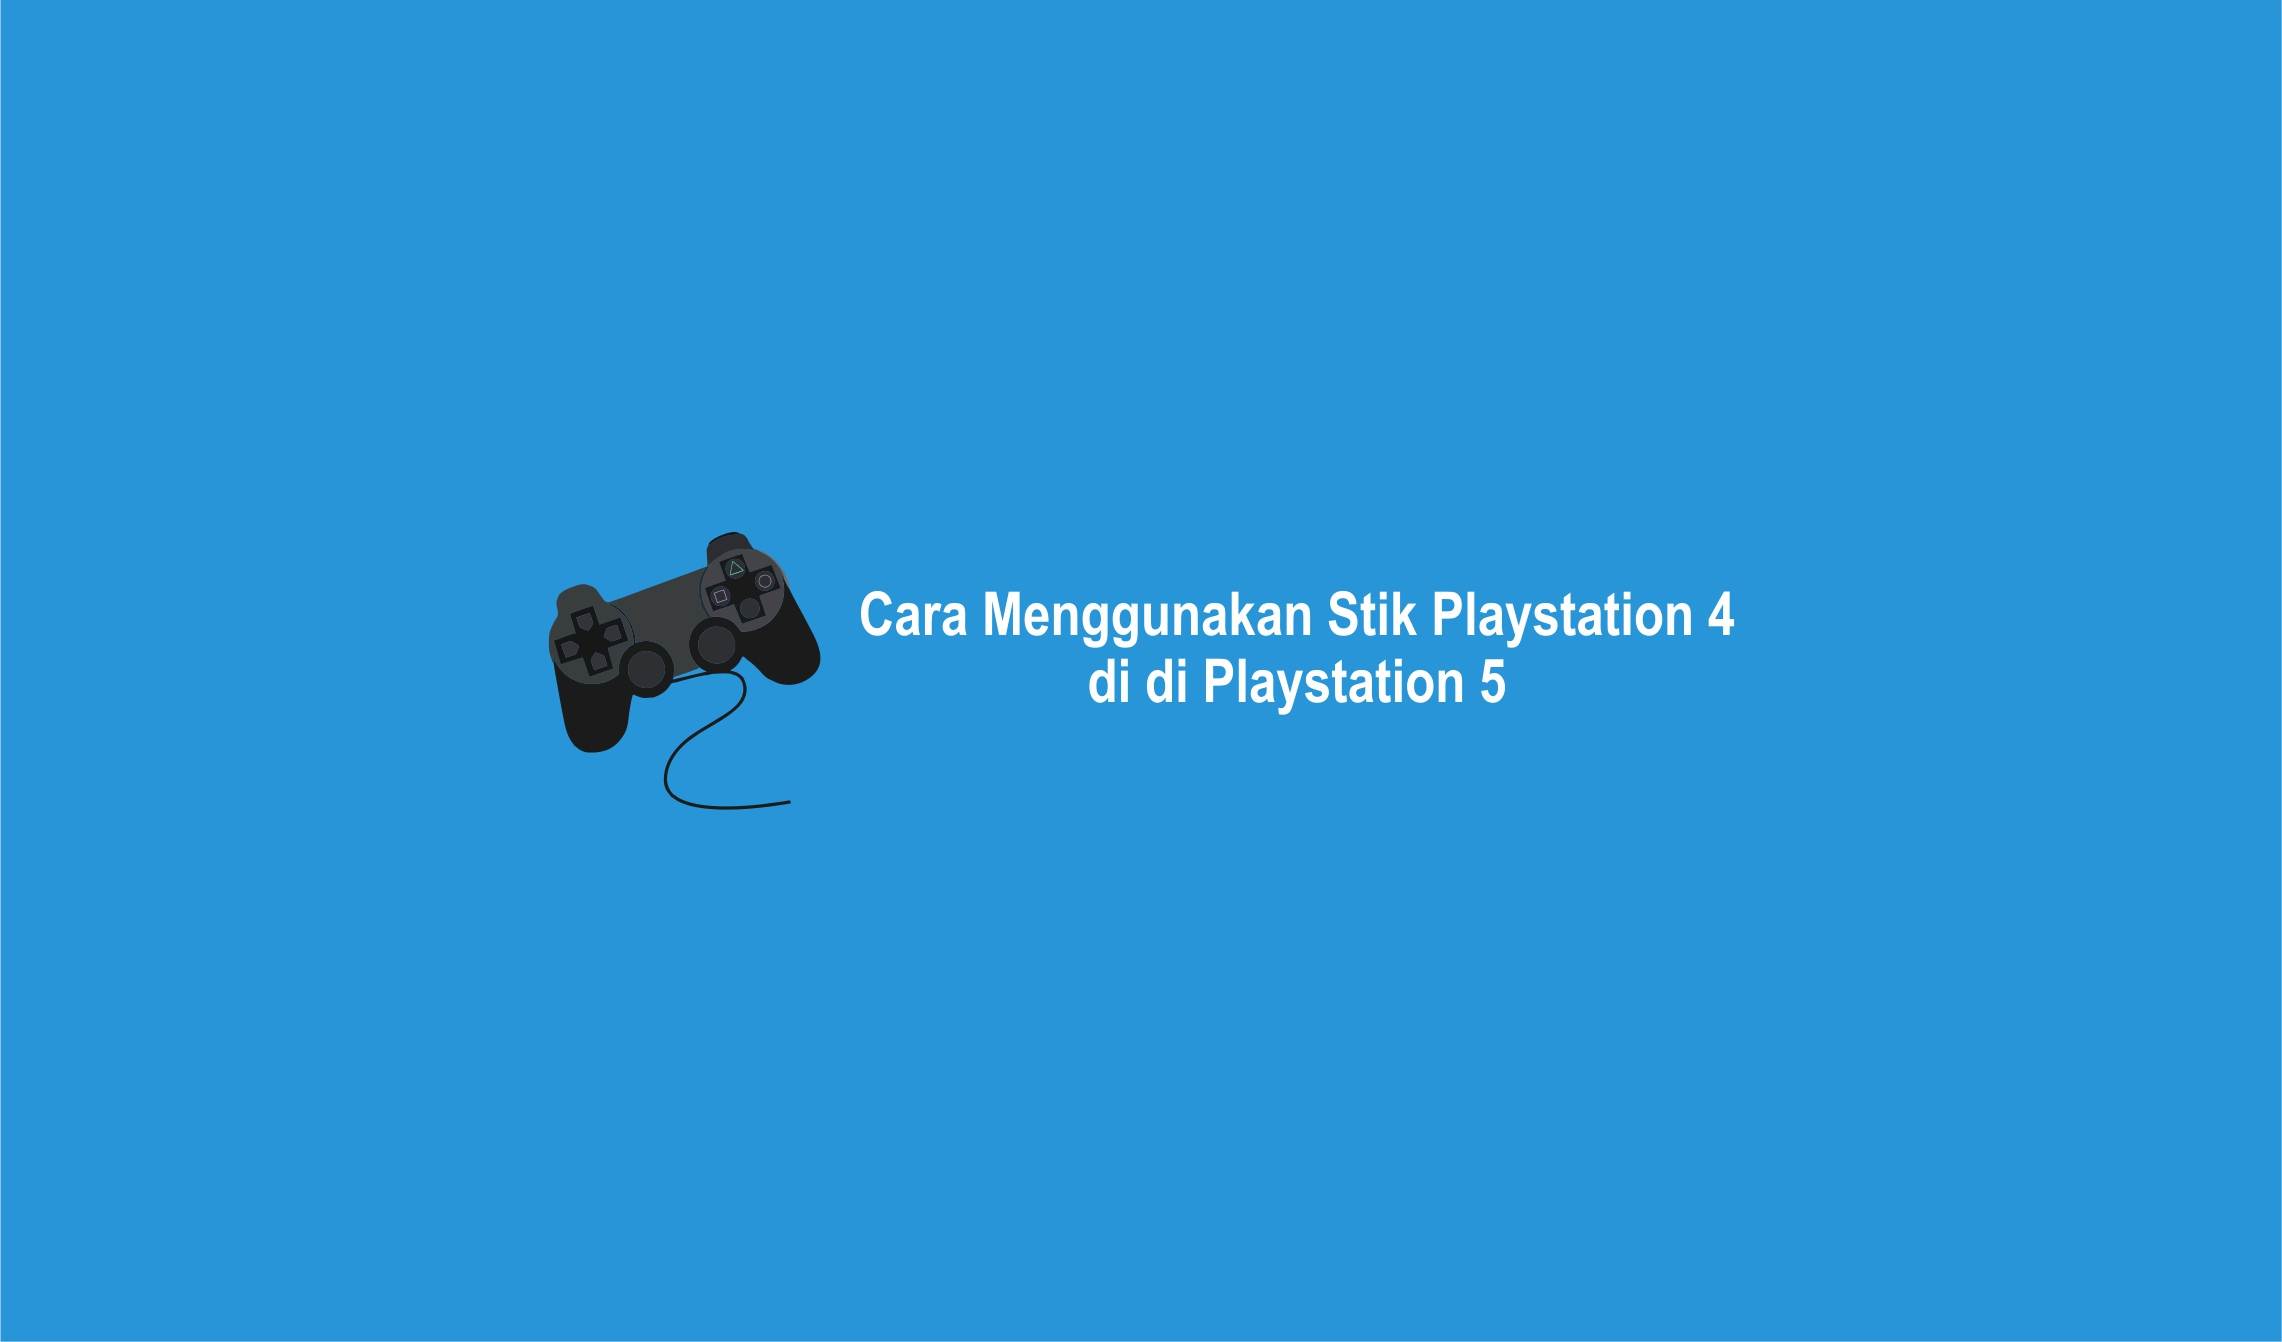 Stik Playstation 4 Bisa Digunakan di Playstation 5-compressed